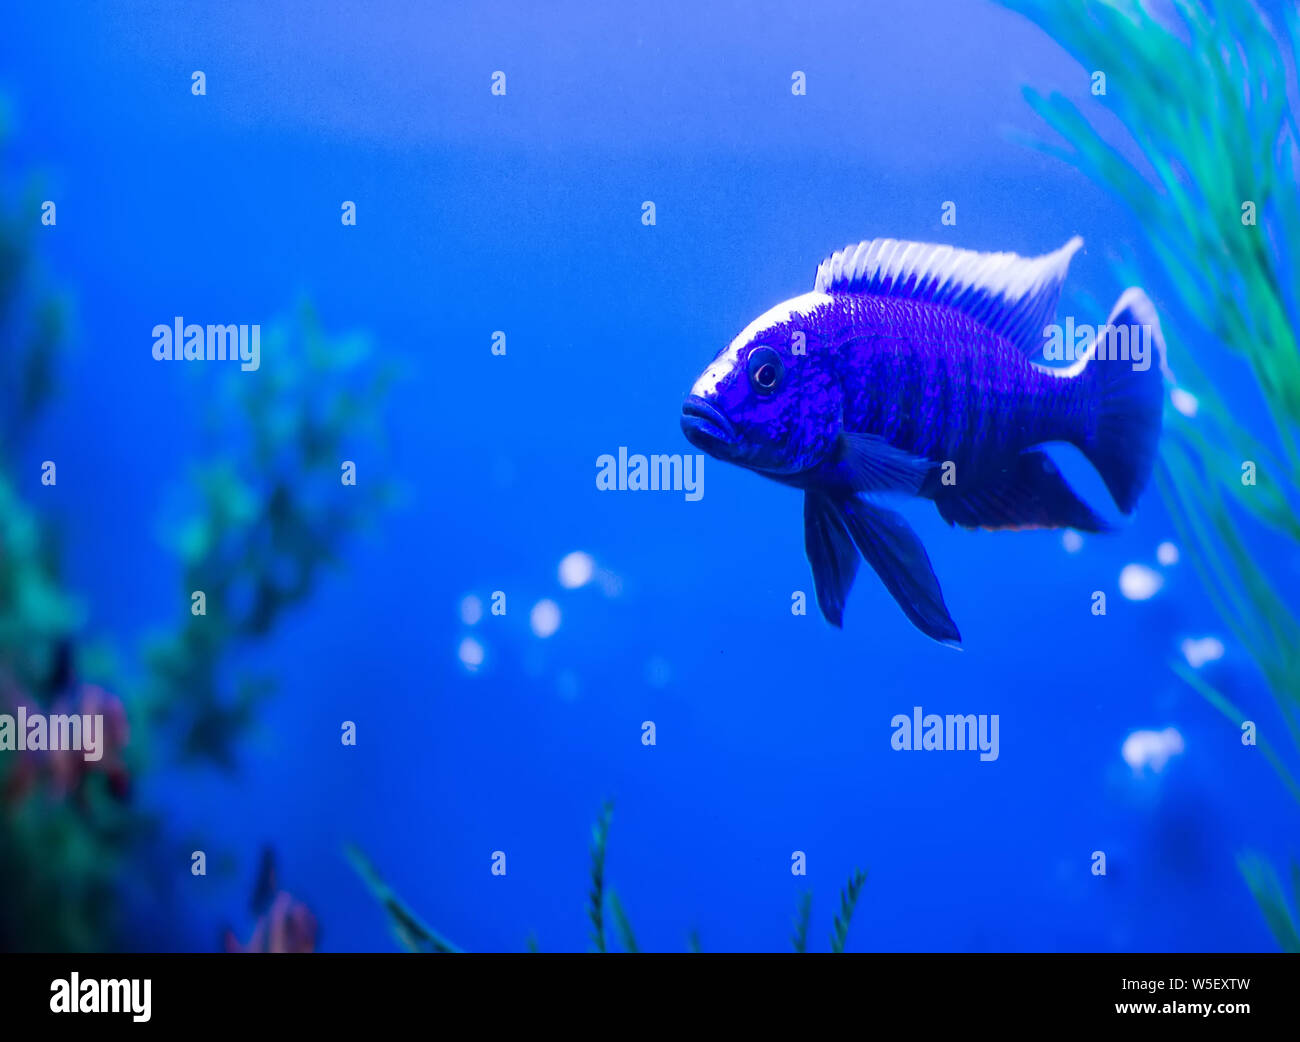 Blue fish with white stripe Queen Nyasa in aquarium, Aulonocara nyassae Stock Photo